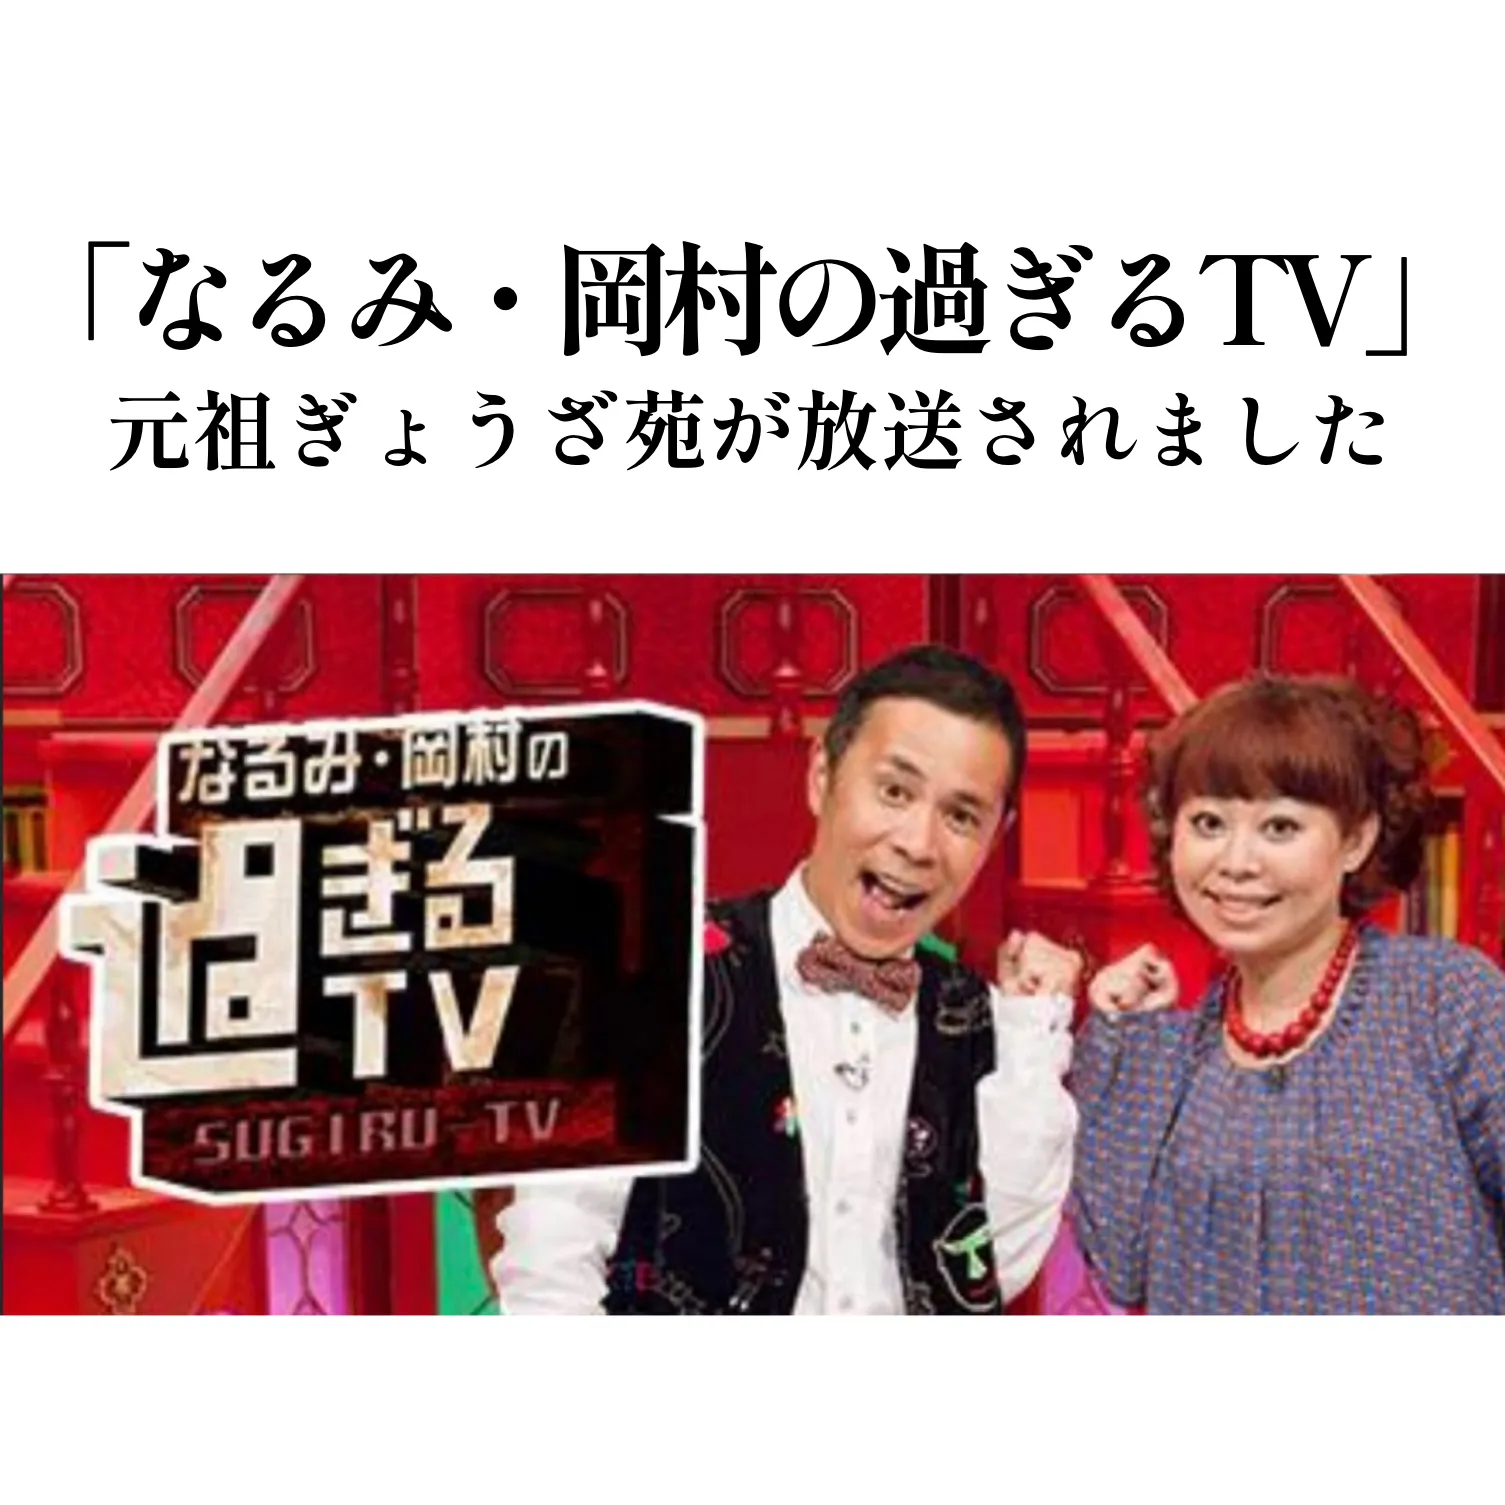 朝日テレビ「なるみ・岡村の過ぎるTV」で放送されました！